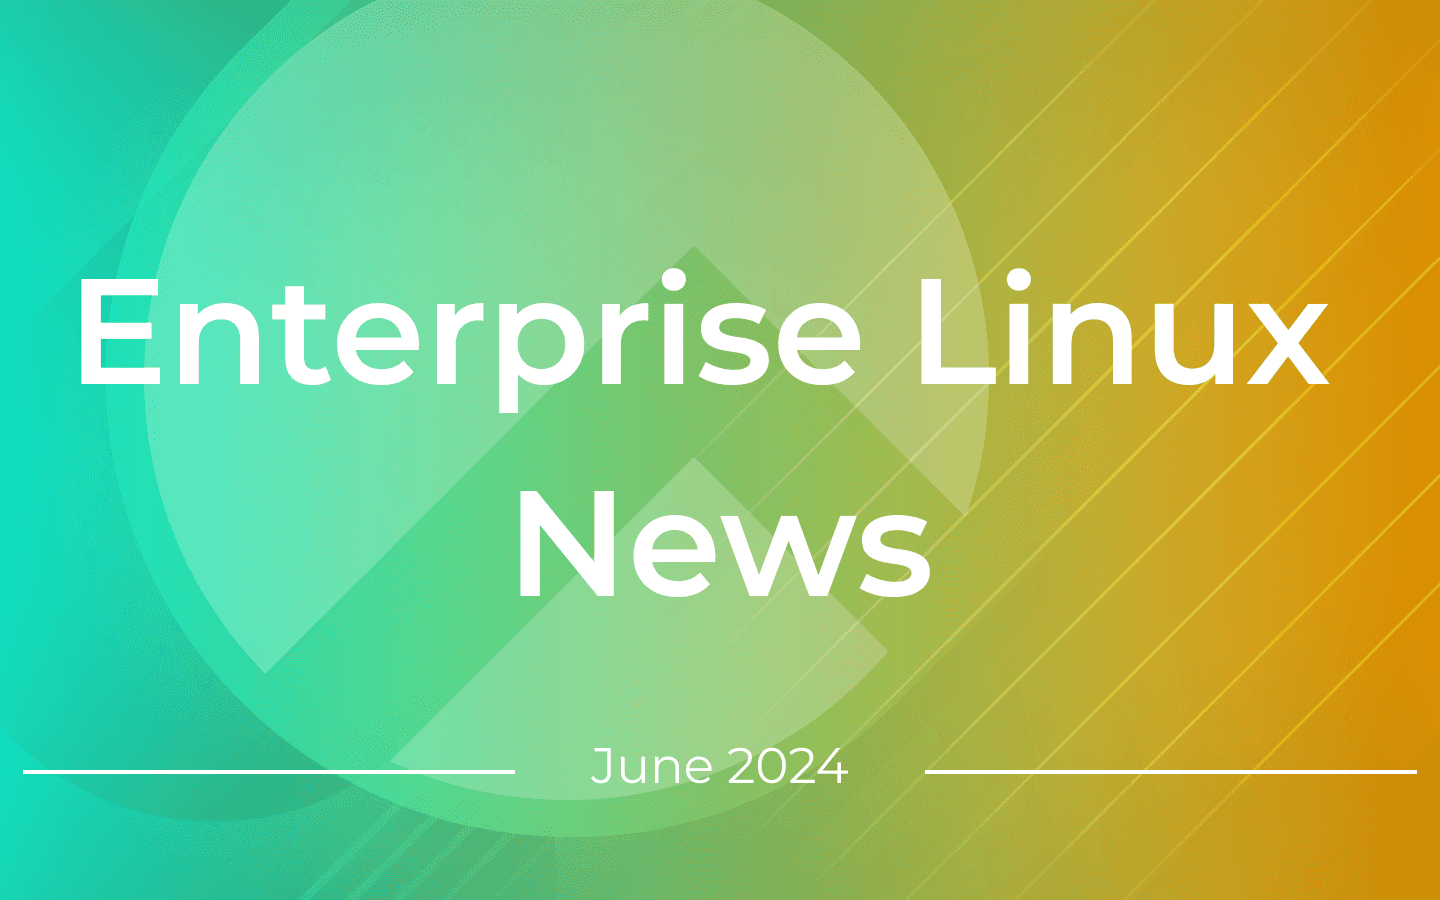 Enterprise Linux News June 2024